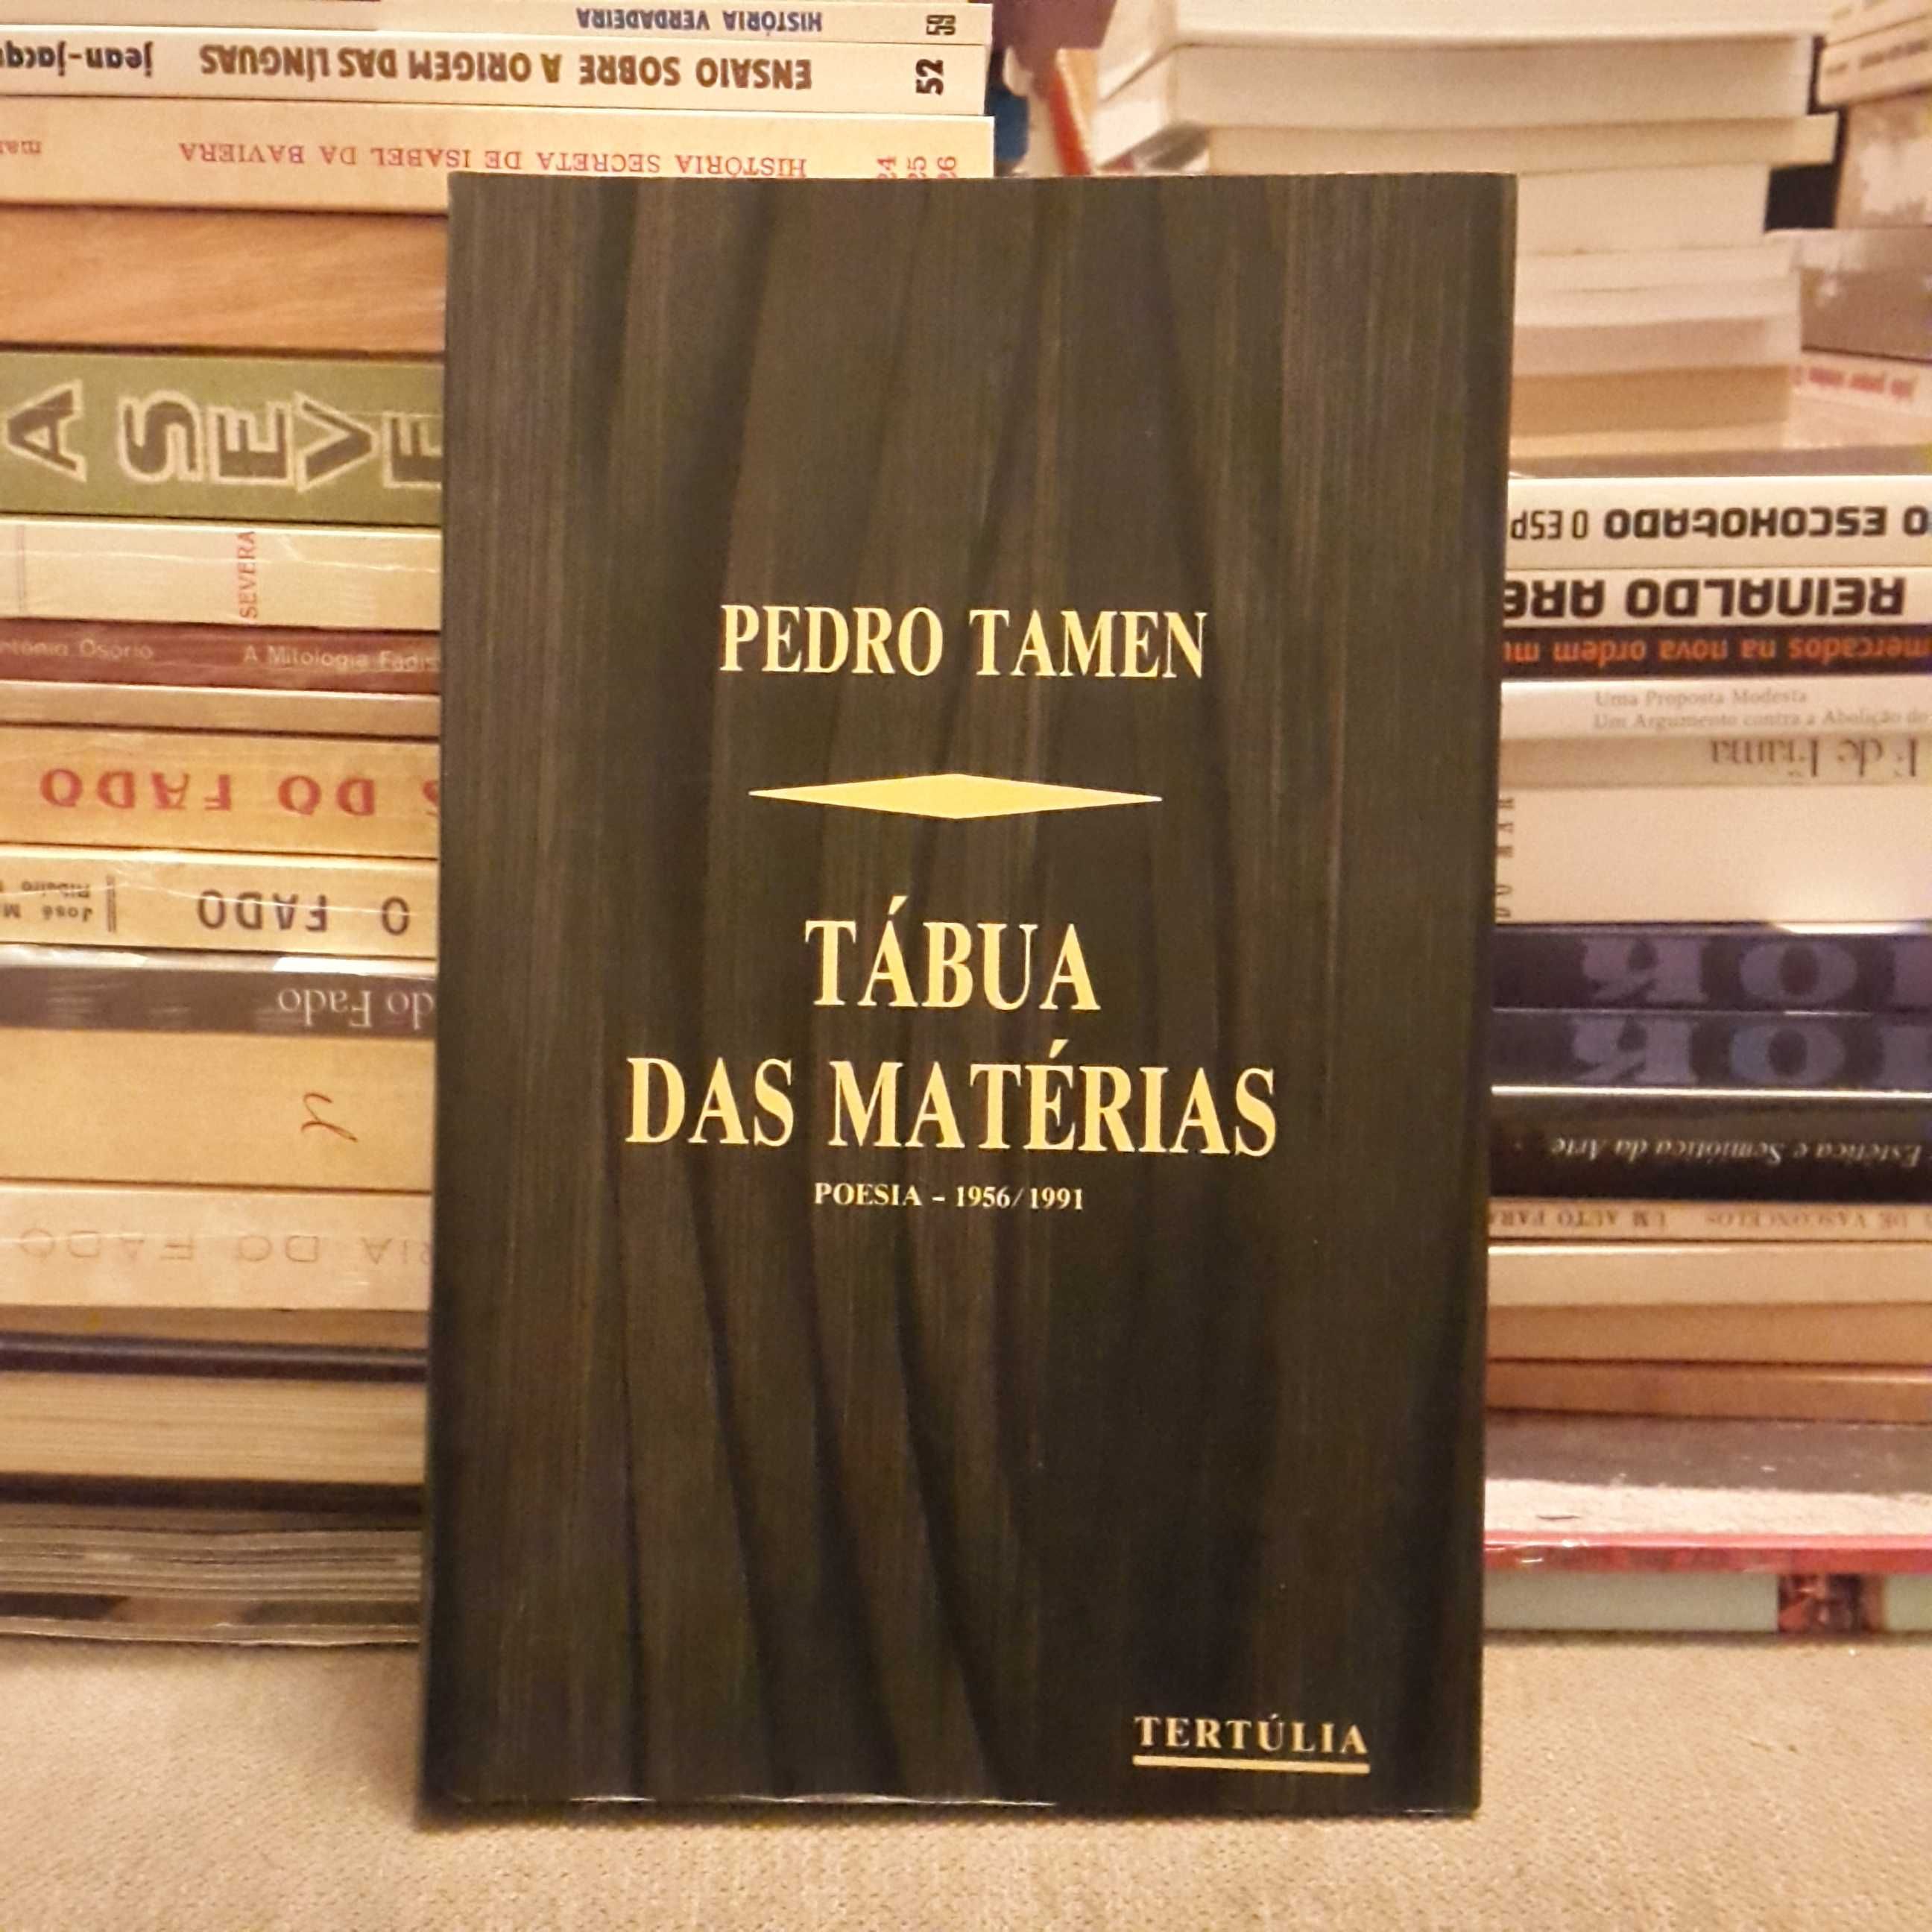 Pedro Tamen - Tábua das Matérias (poesia - 1956/1991)